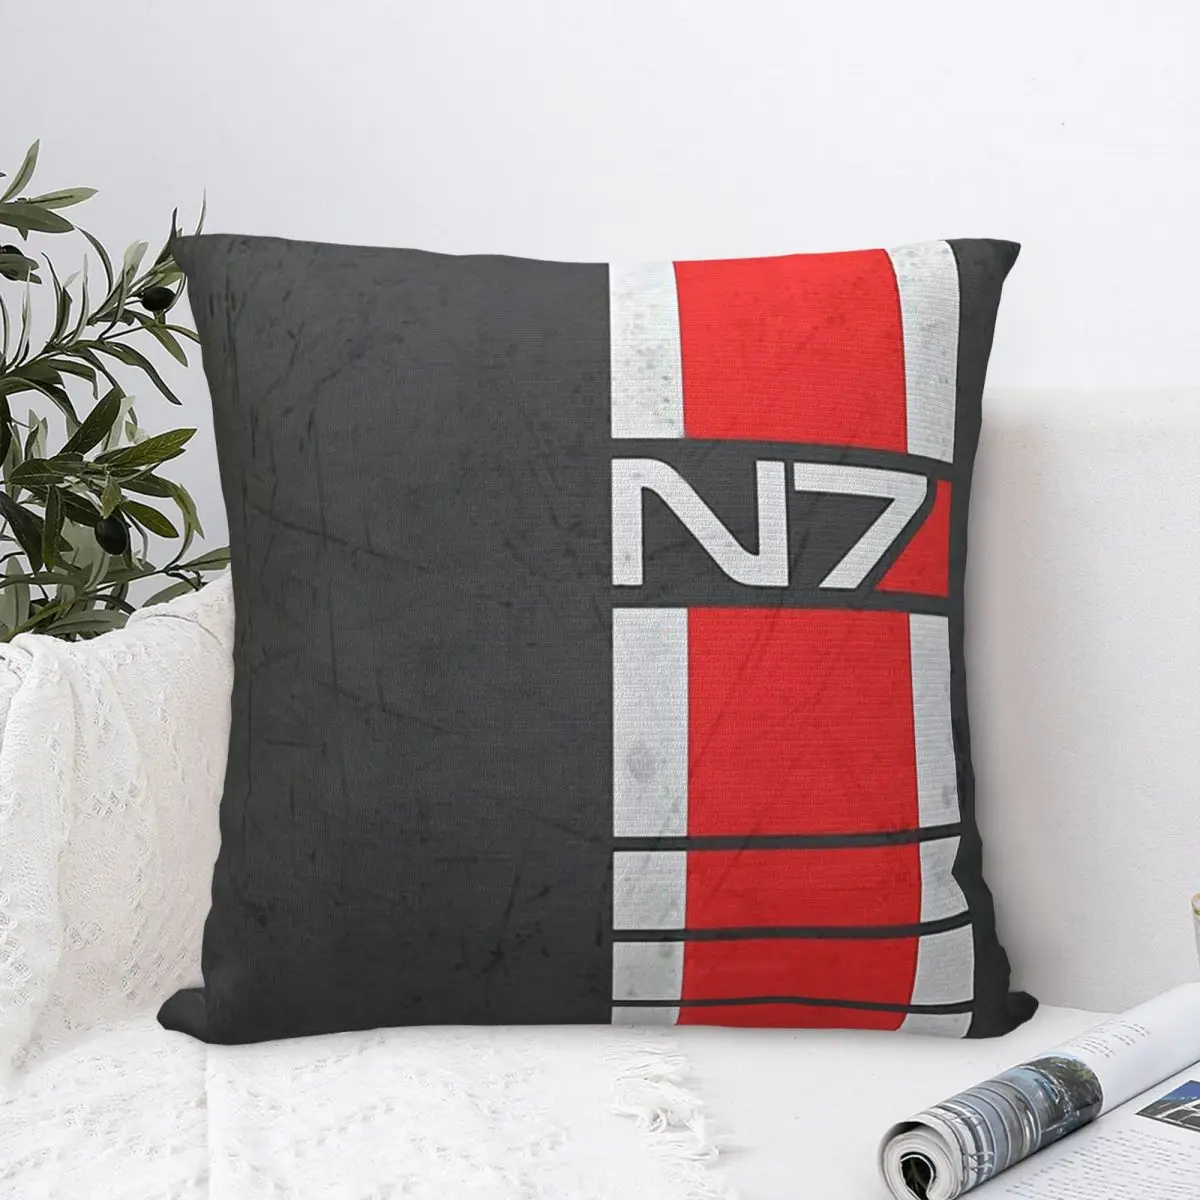 

N7 Trip Cojines Throw Pillow Case Mass Effect Cushion Home Sofa Chair Print Decorative Coussin